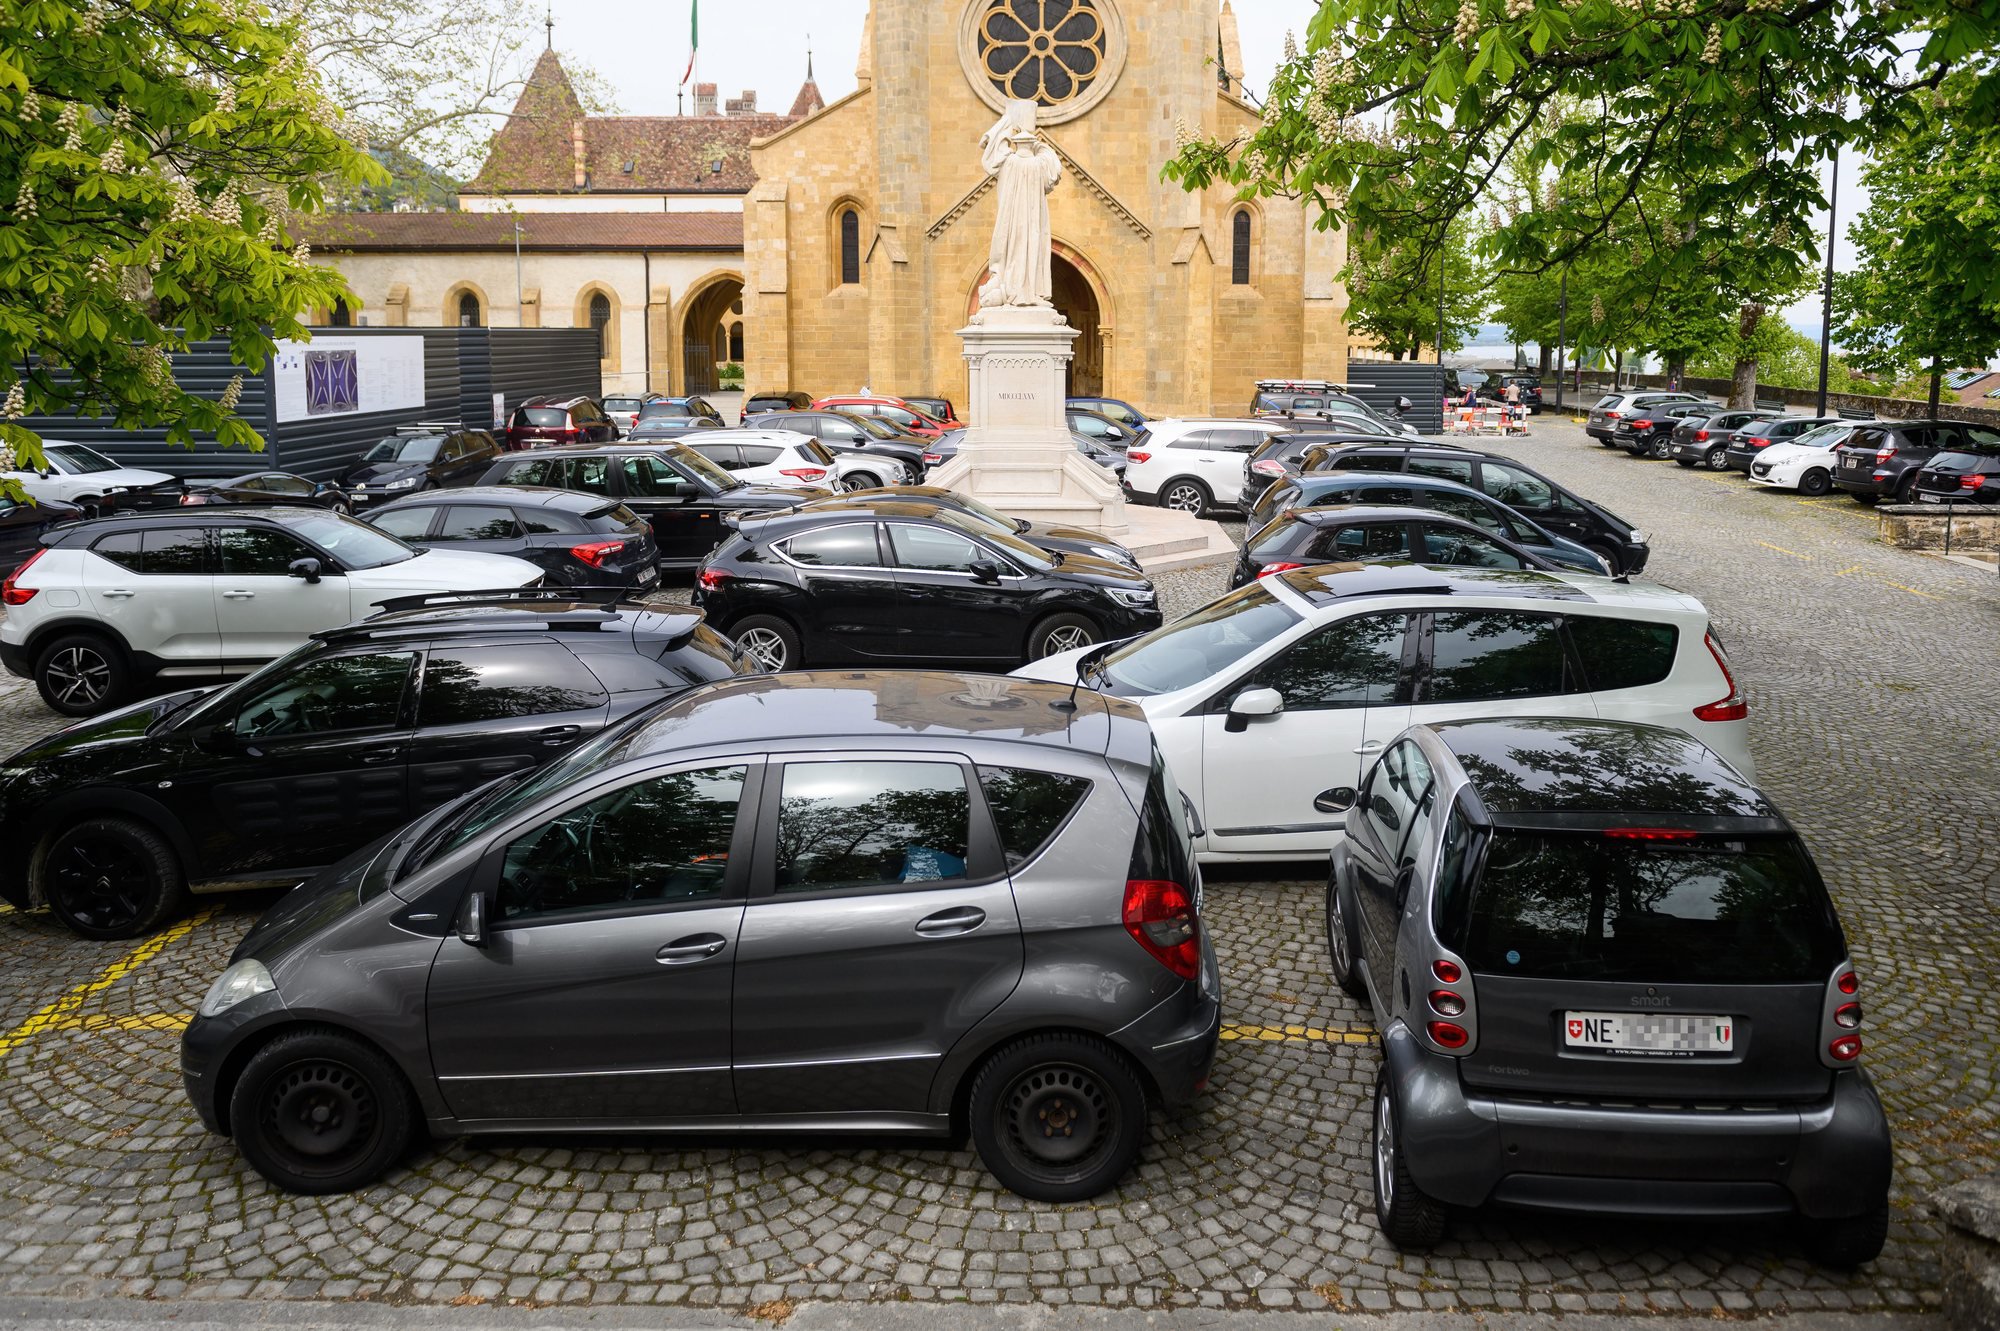 Durant les sessions du Grand Conseil neuchâtelois, nombre de députés garent leur voiture sur le parvis de la collégiale.